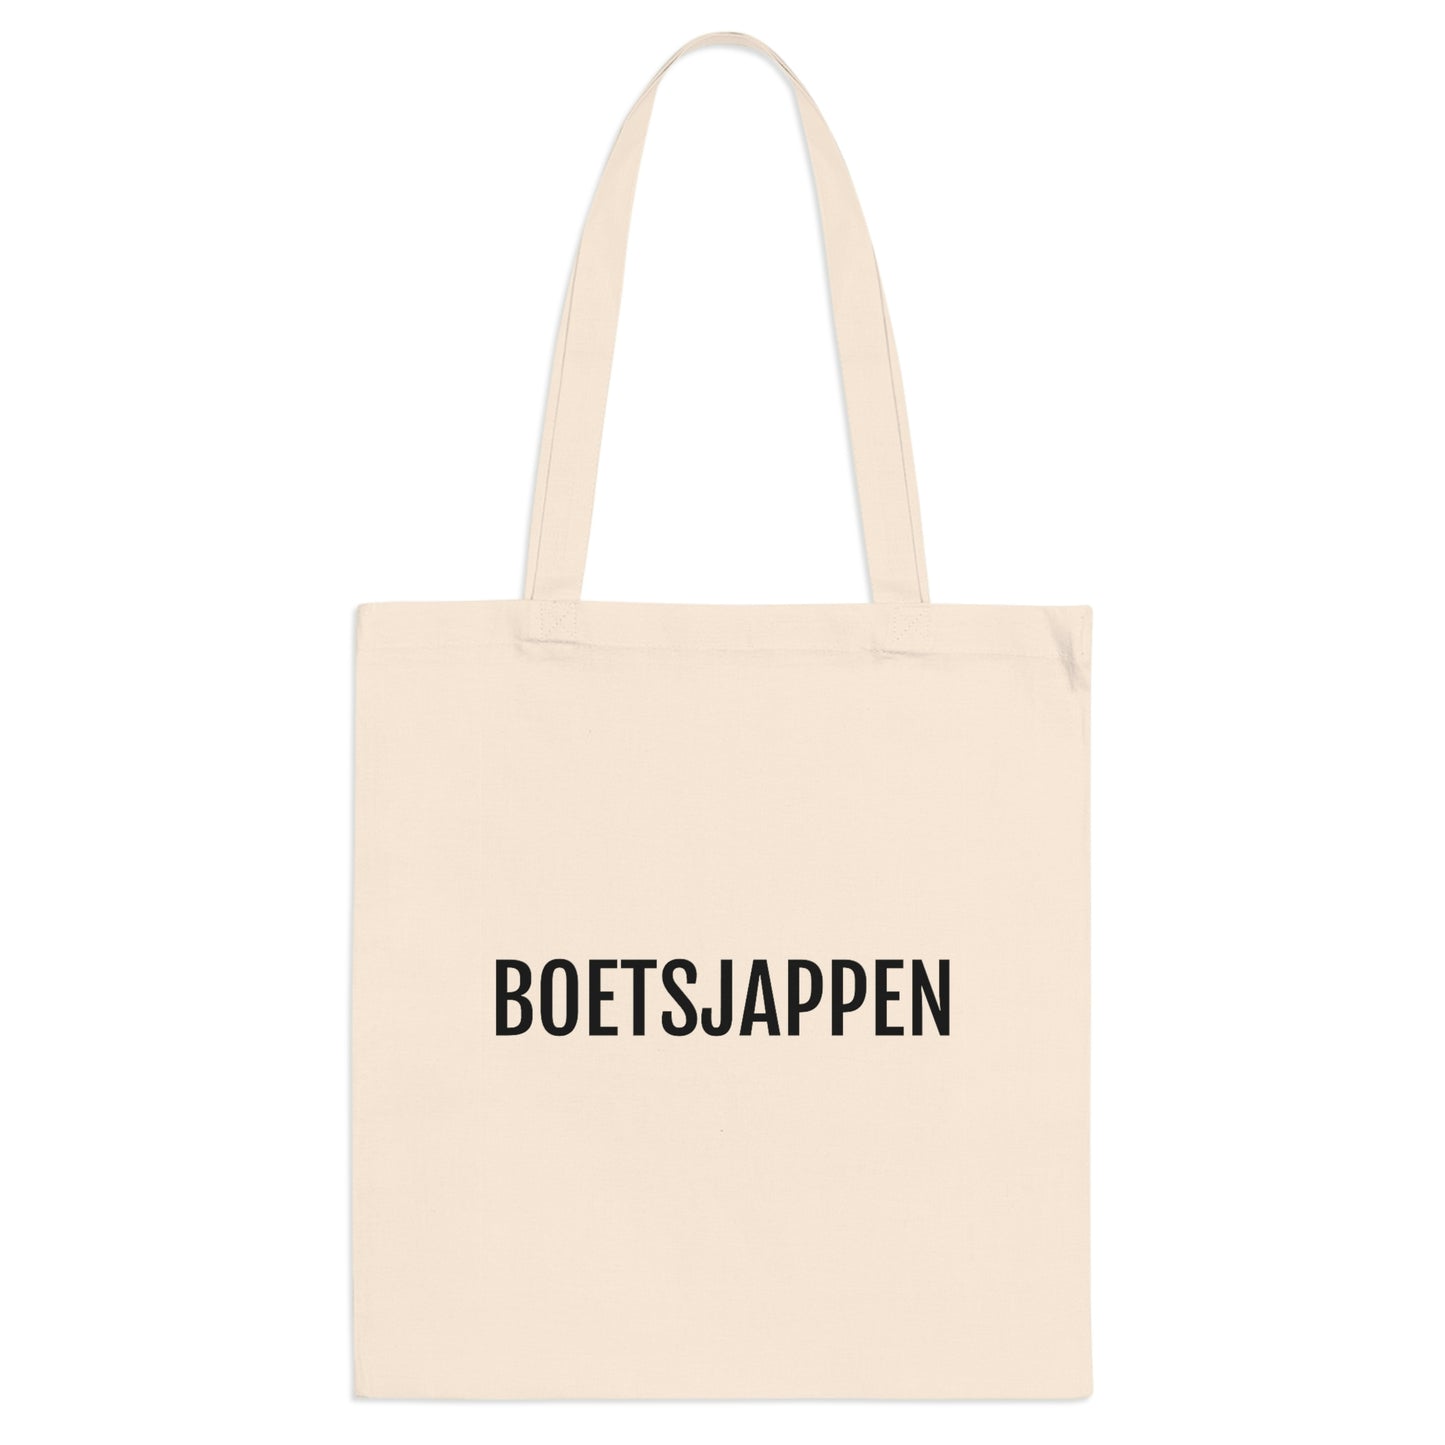 Boetsjappen - Shop onze collectie trendy en praktische dialect tote bags voor elke gelegenheid.